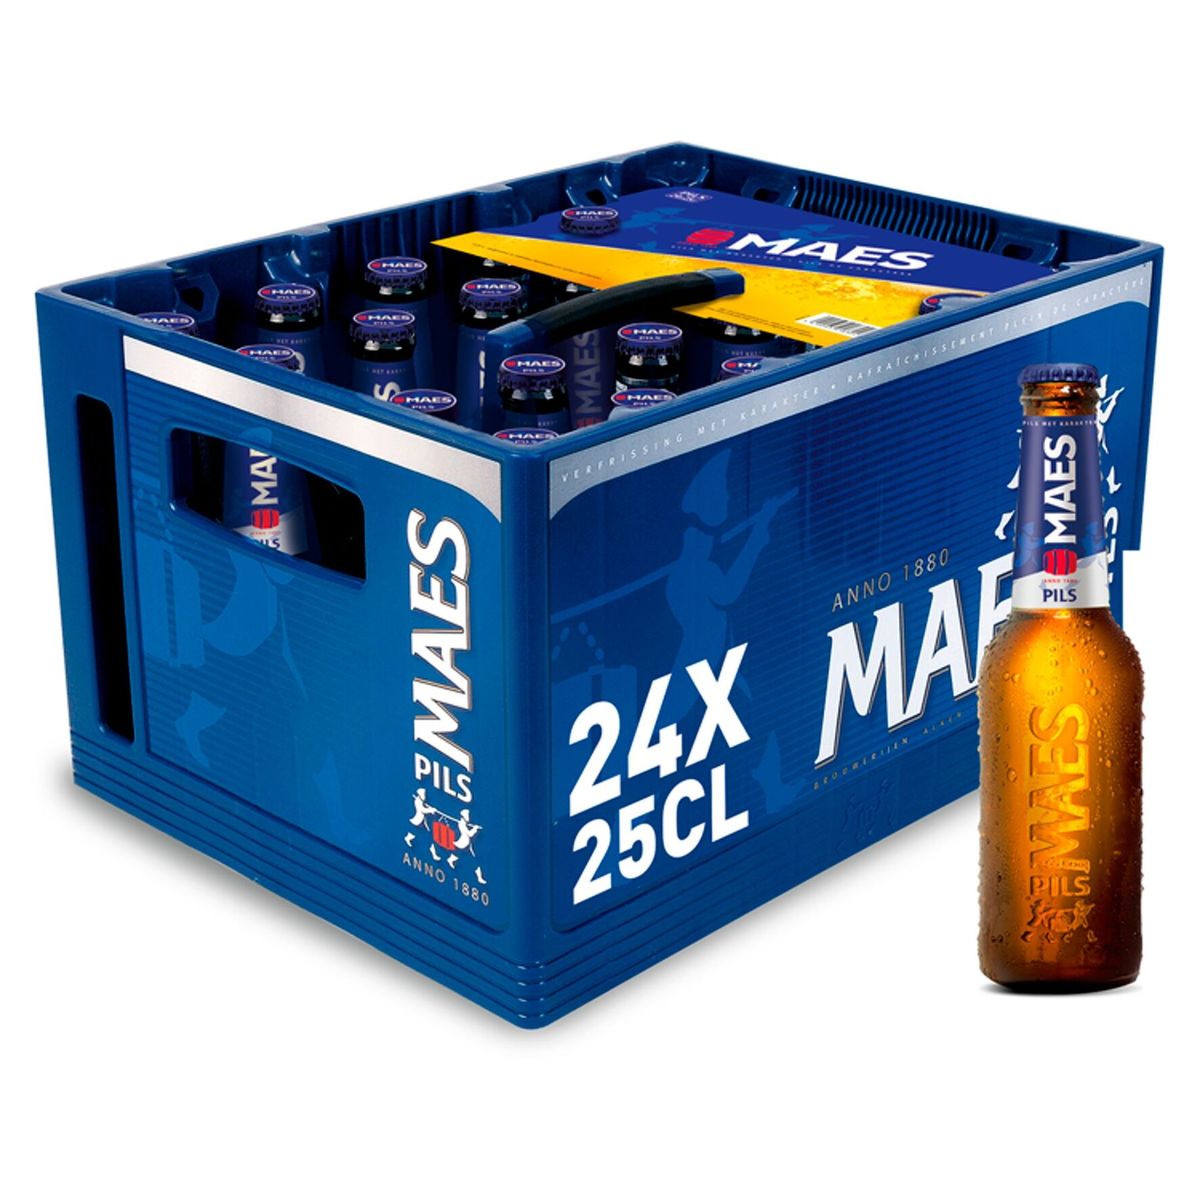 Maes Bière blonde Pils 5.2% ALC 24 x 25 cl Bac